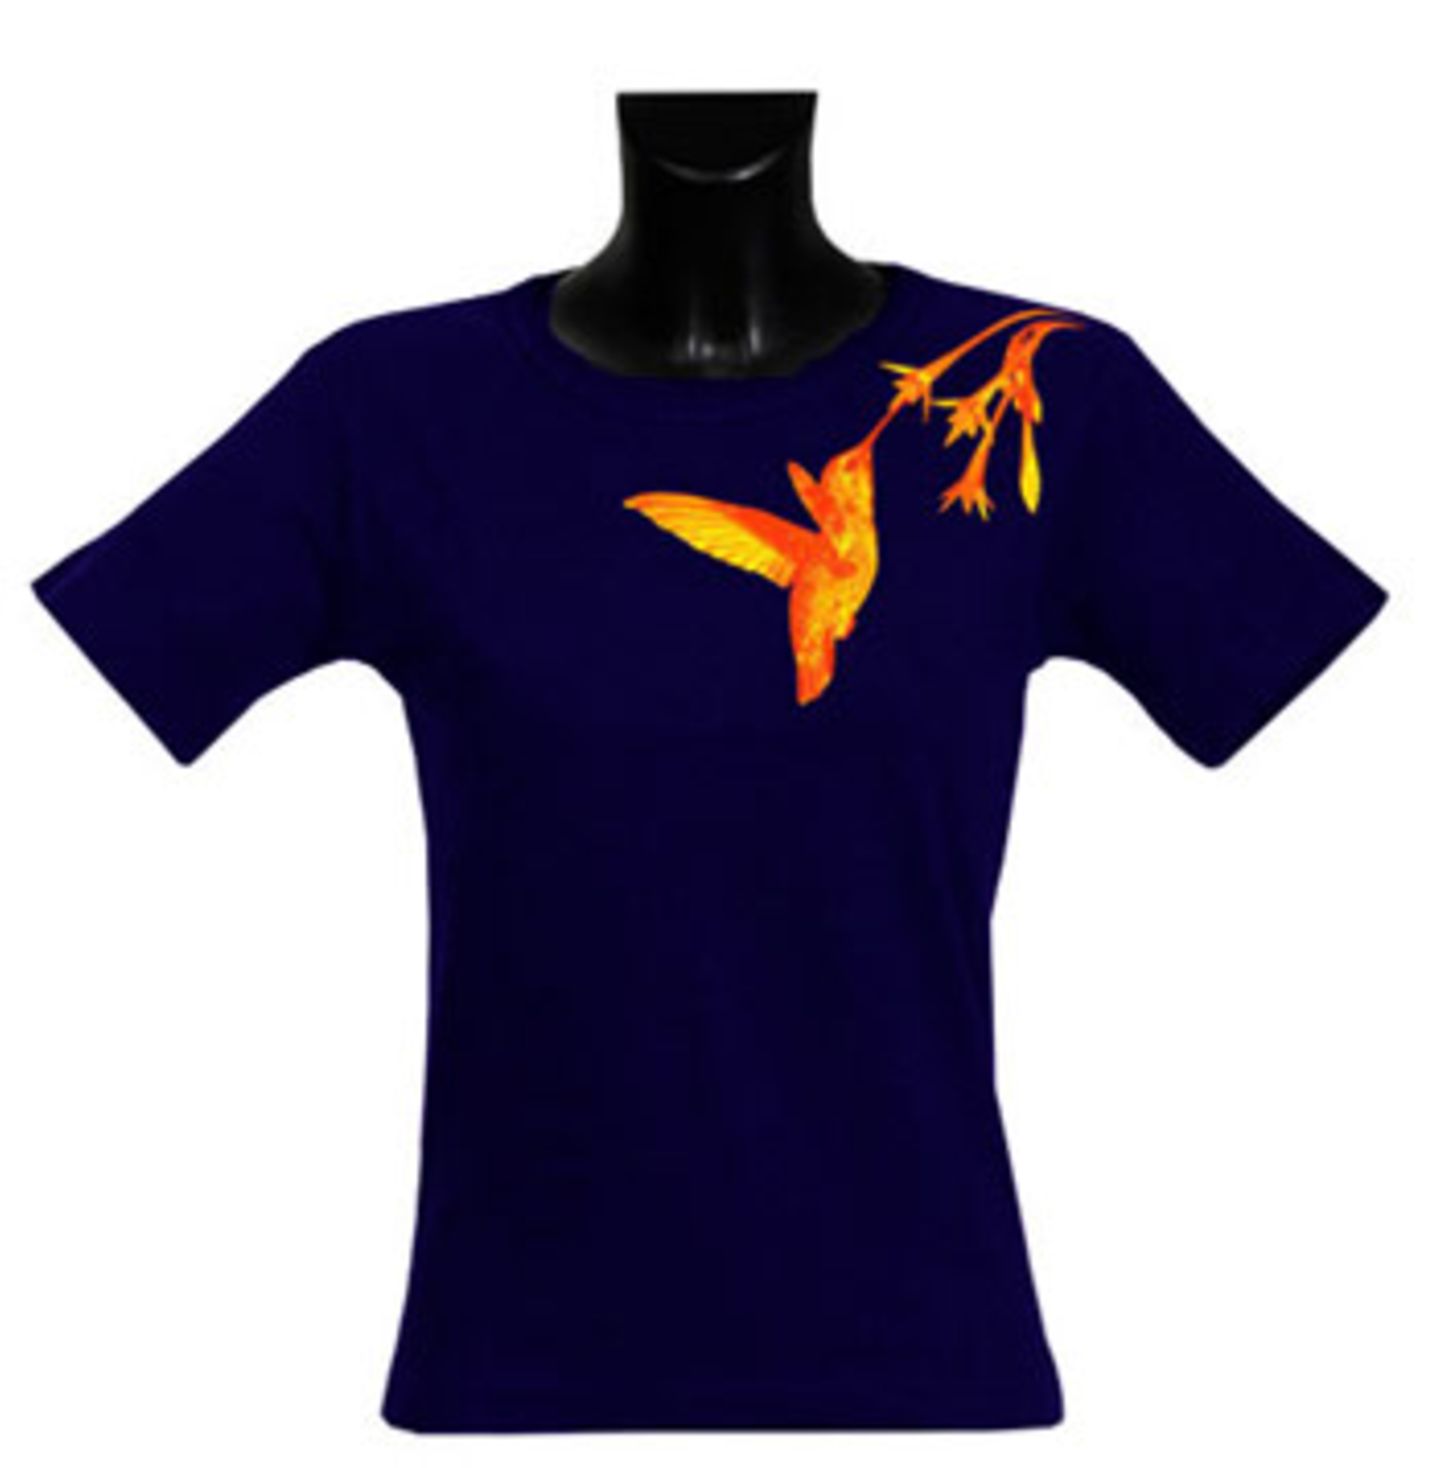 Das Hanf-Baumwoll-Shirts "Hummingbird" von THTC in Goldgelb auf dunkelblau sieht super aus und fühlt sich fantastisch an; 29,50 Euro inkl. MwSt./zzgl. Versandkosten; von THTC über >> www.fairwear.de